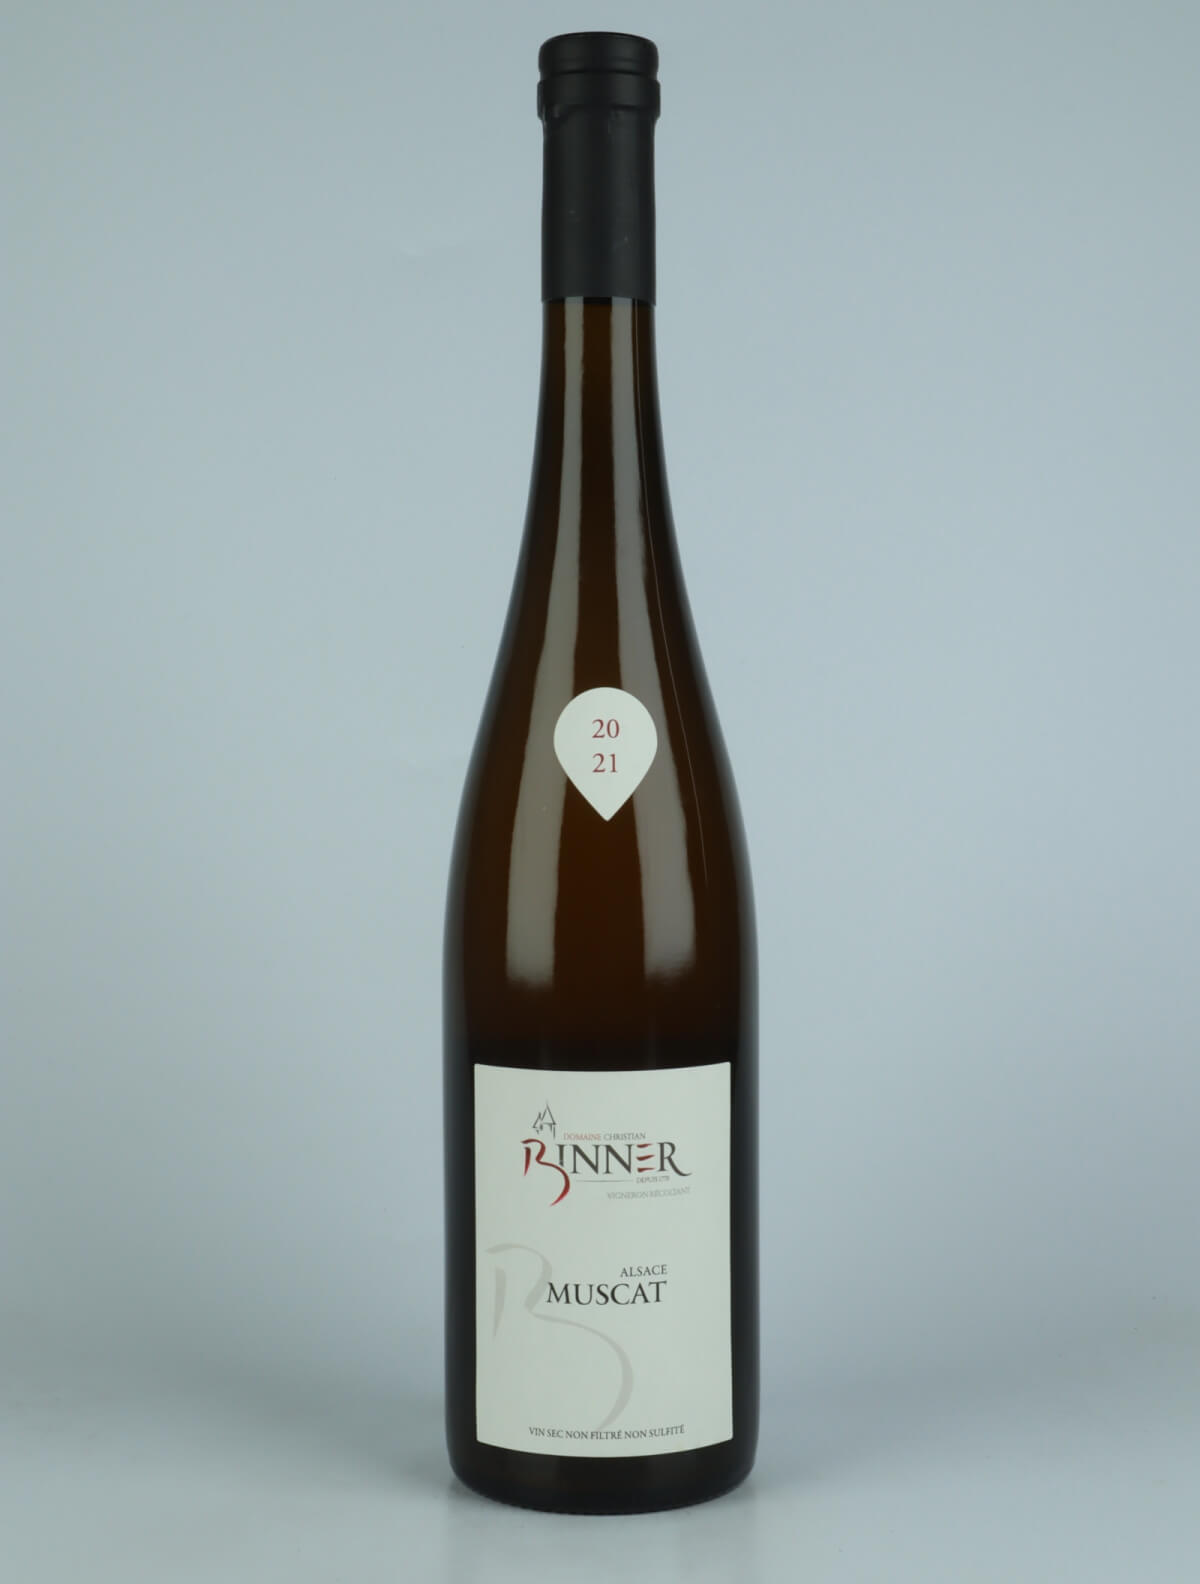 A bottle N.V. Muscat (20/21) White wine from Domaine Christian Binner, Alsace in France